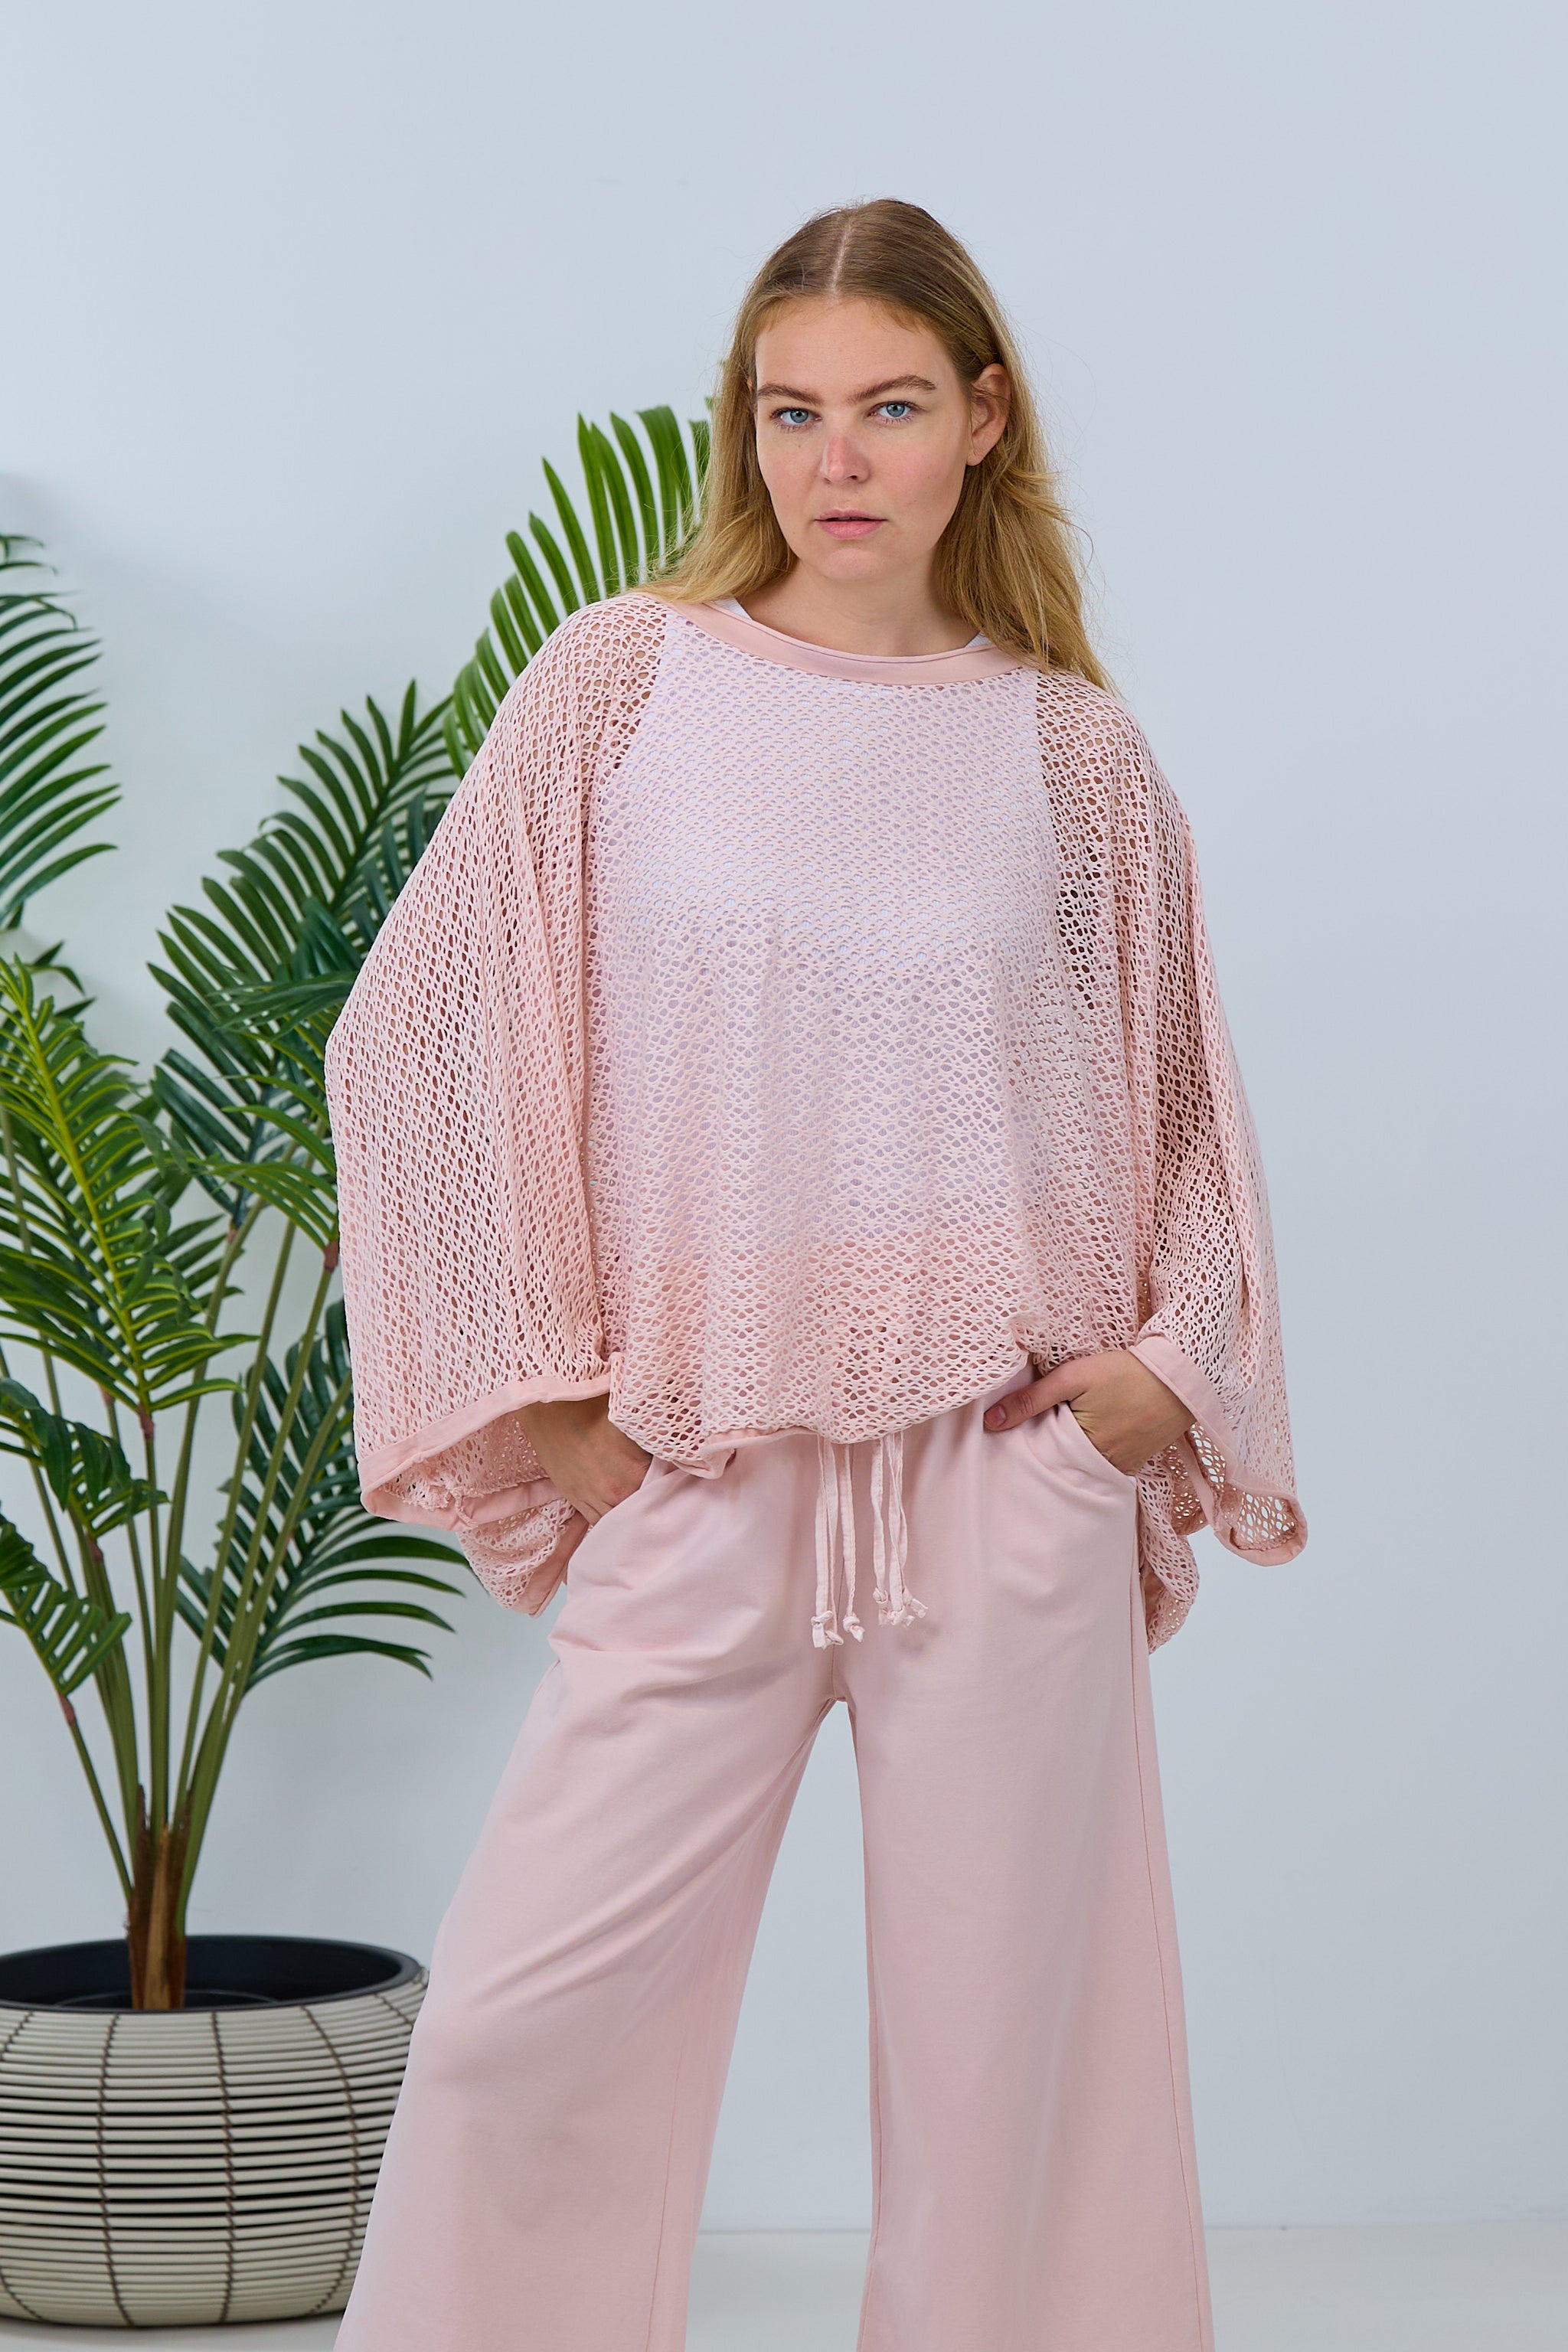 Lochstrick Shirt im Poncho-Style, rosa von Trends & Lifestyle